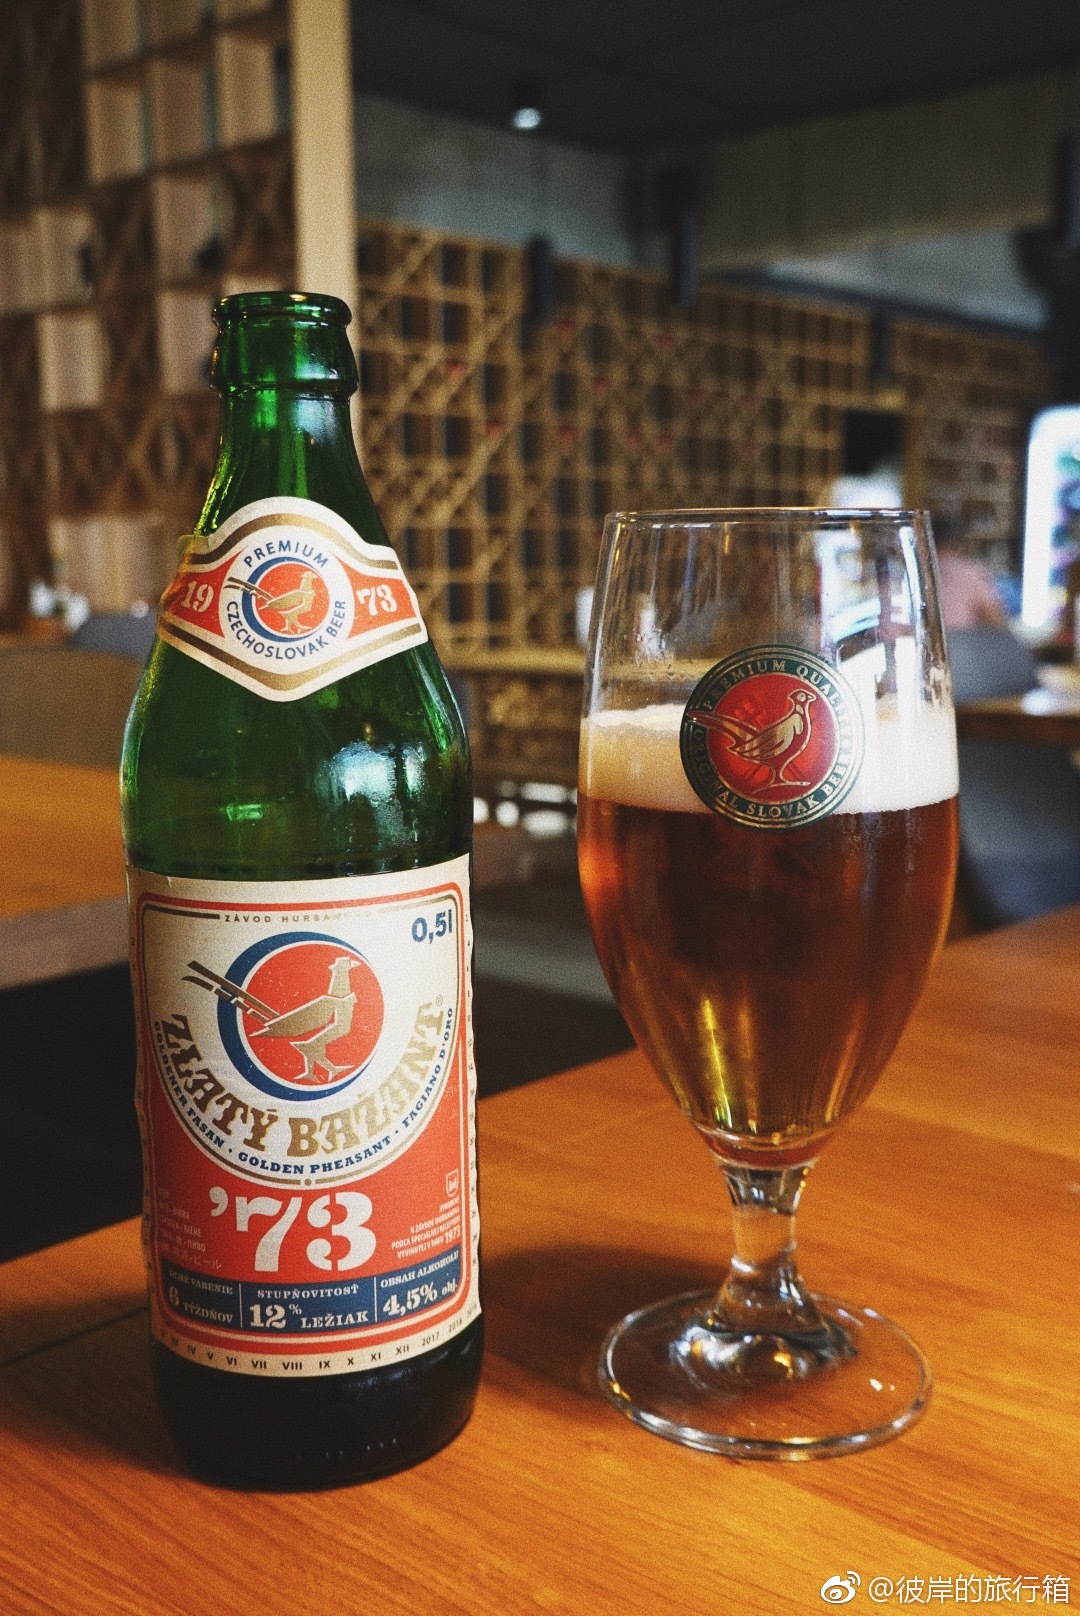 1973年创建啤酒厂时,这个国家还叫捷克斯洛伐克 67